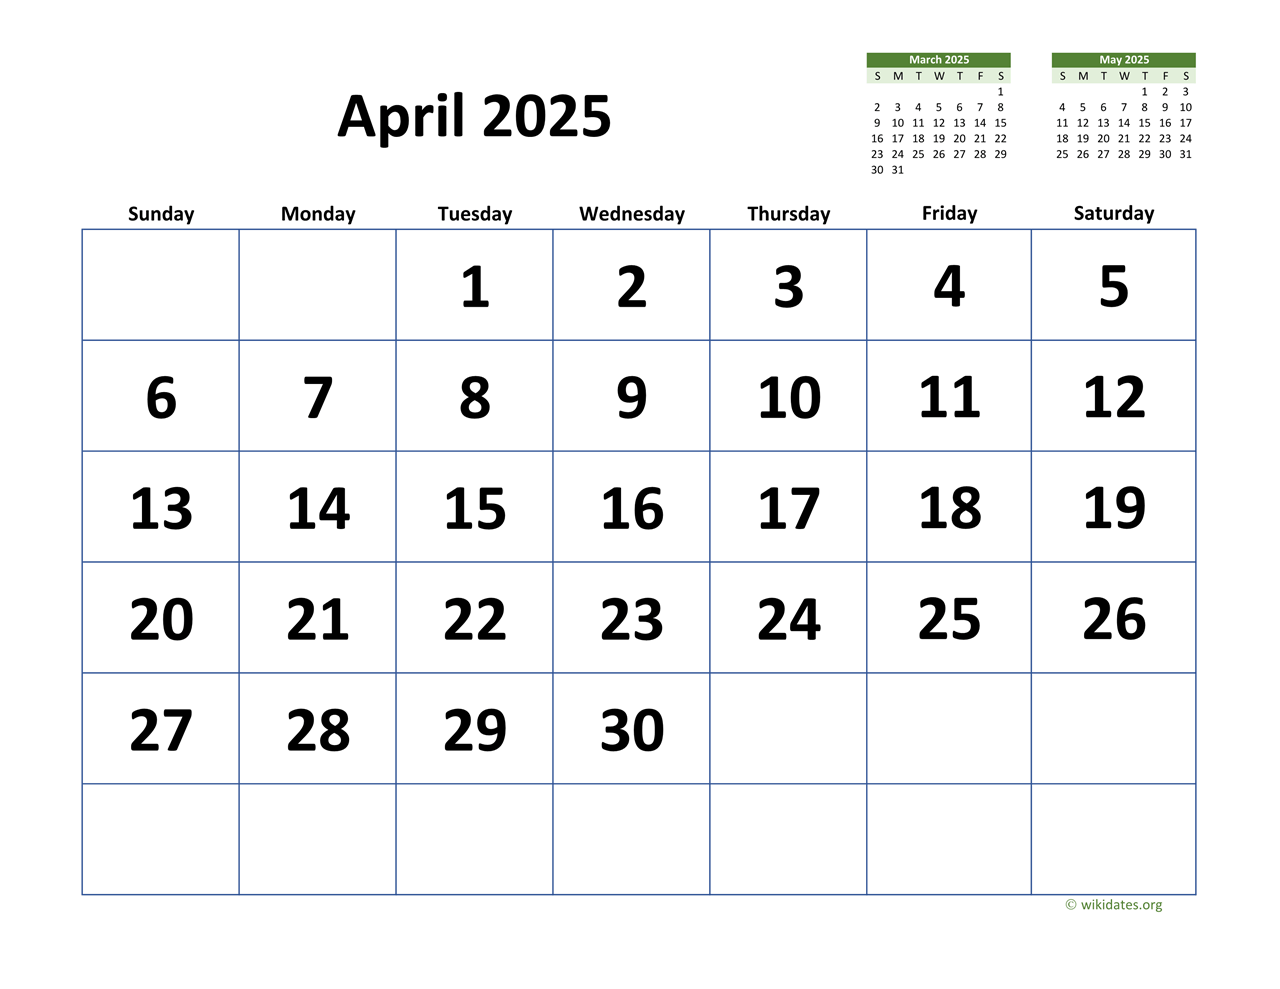 April 2025 Calender